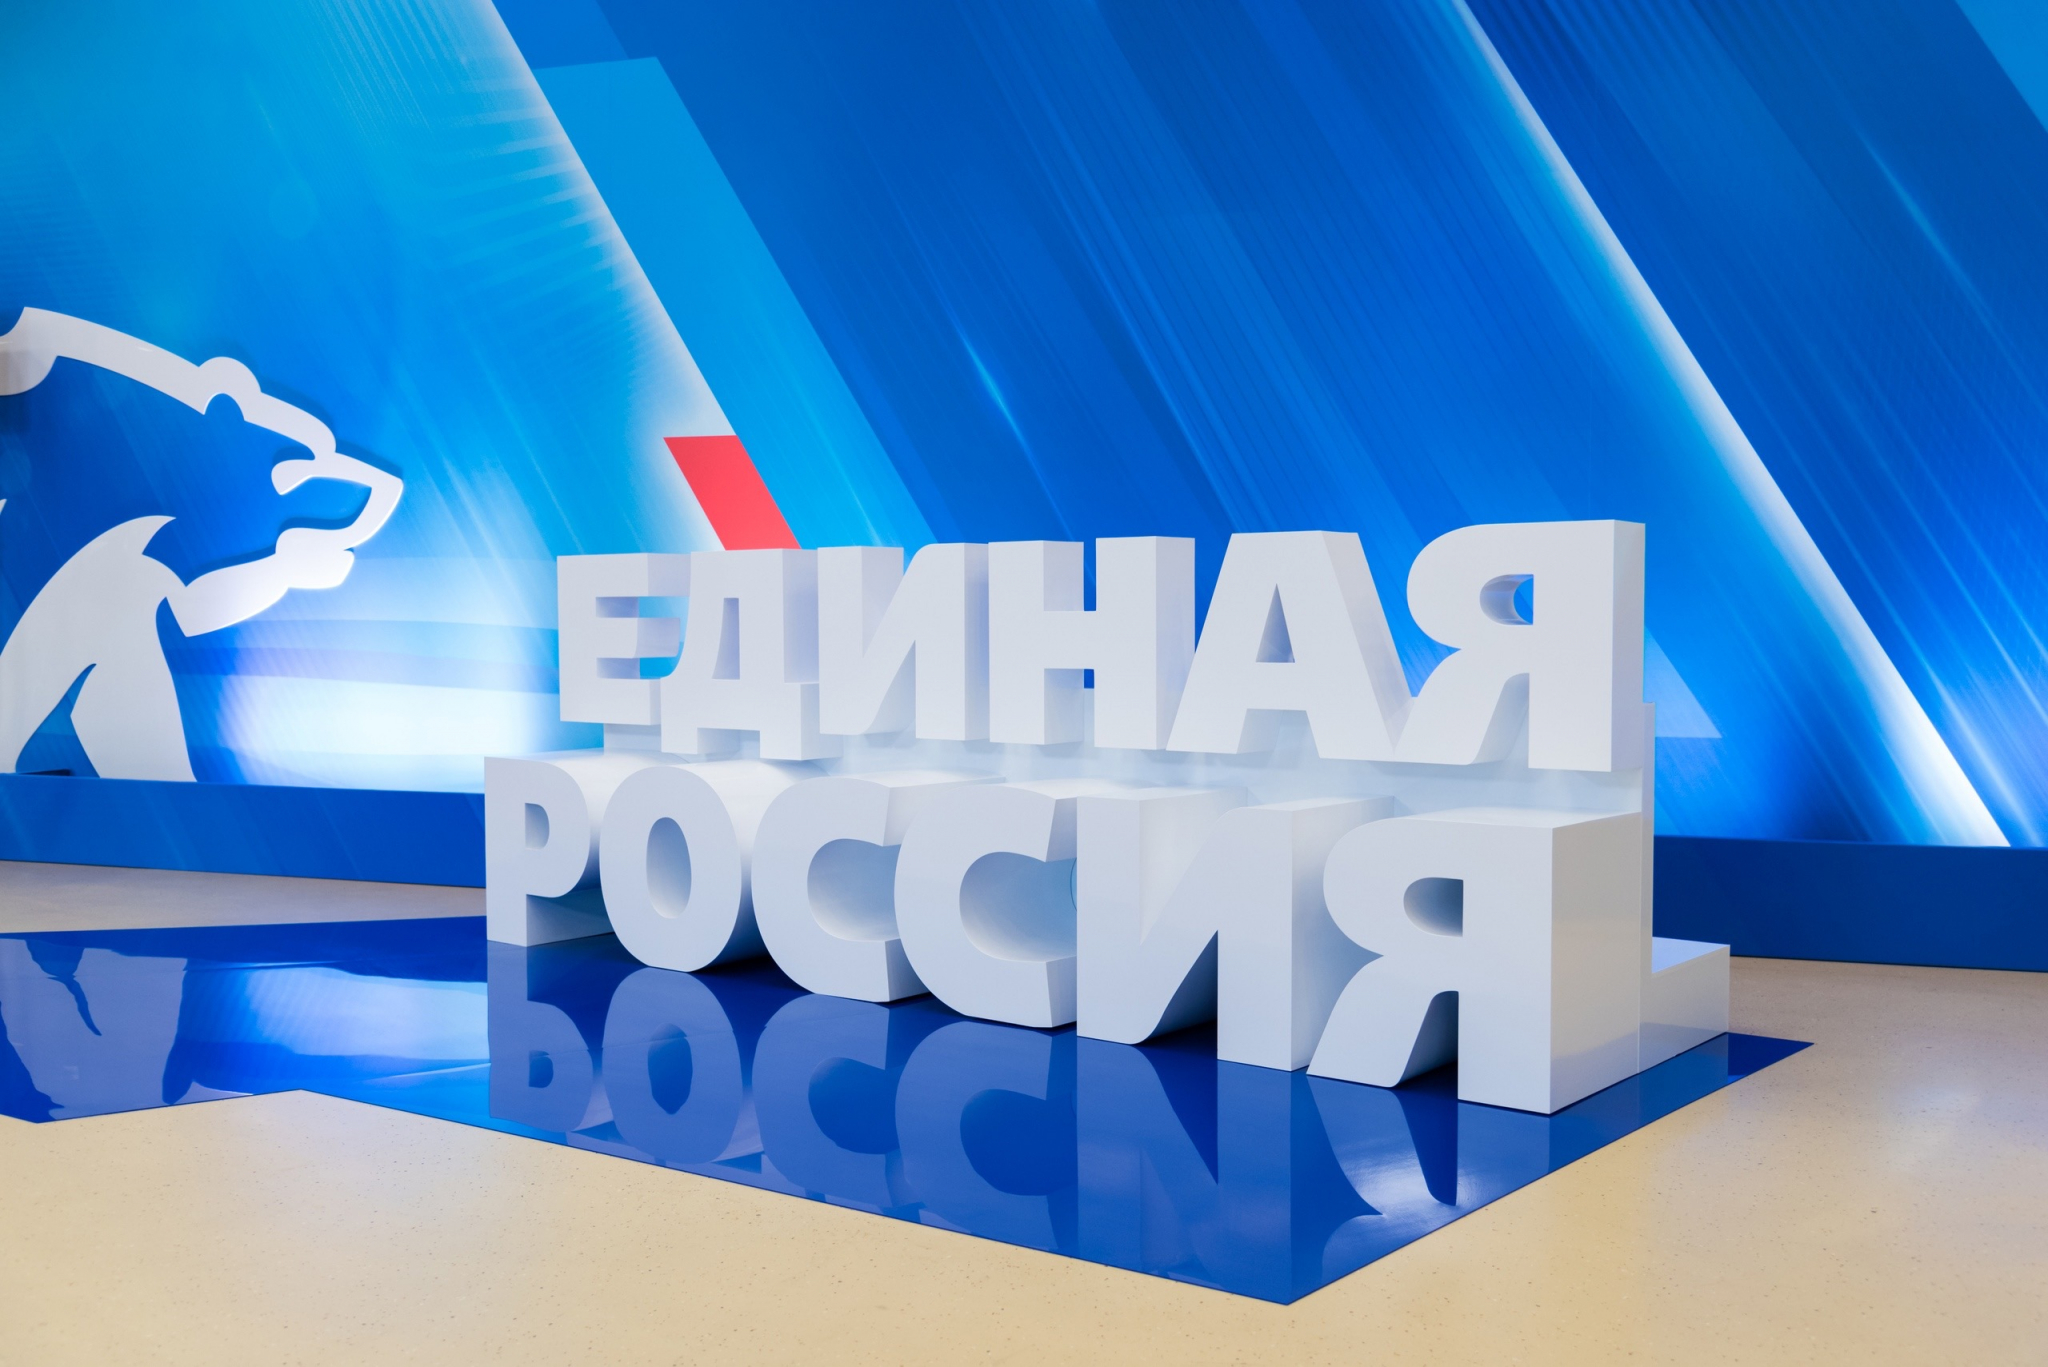 Владимир Киселев: «Эти выборы показали, что рейтинг «Единой России» в нашем регионе вырос по сравнению с предыдущими выборами